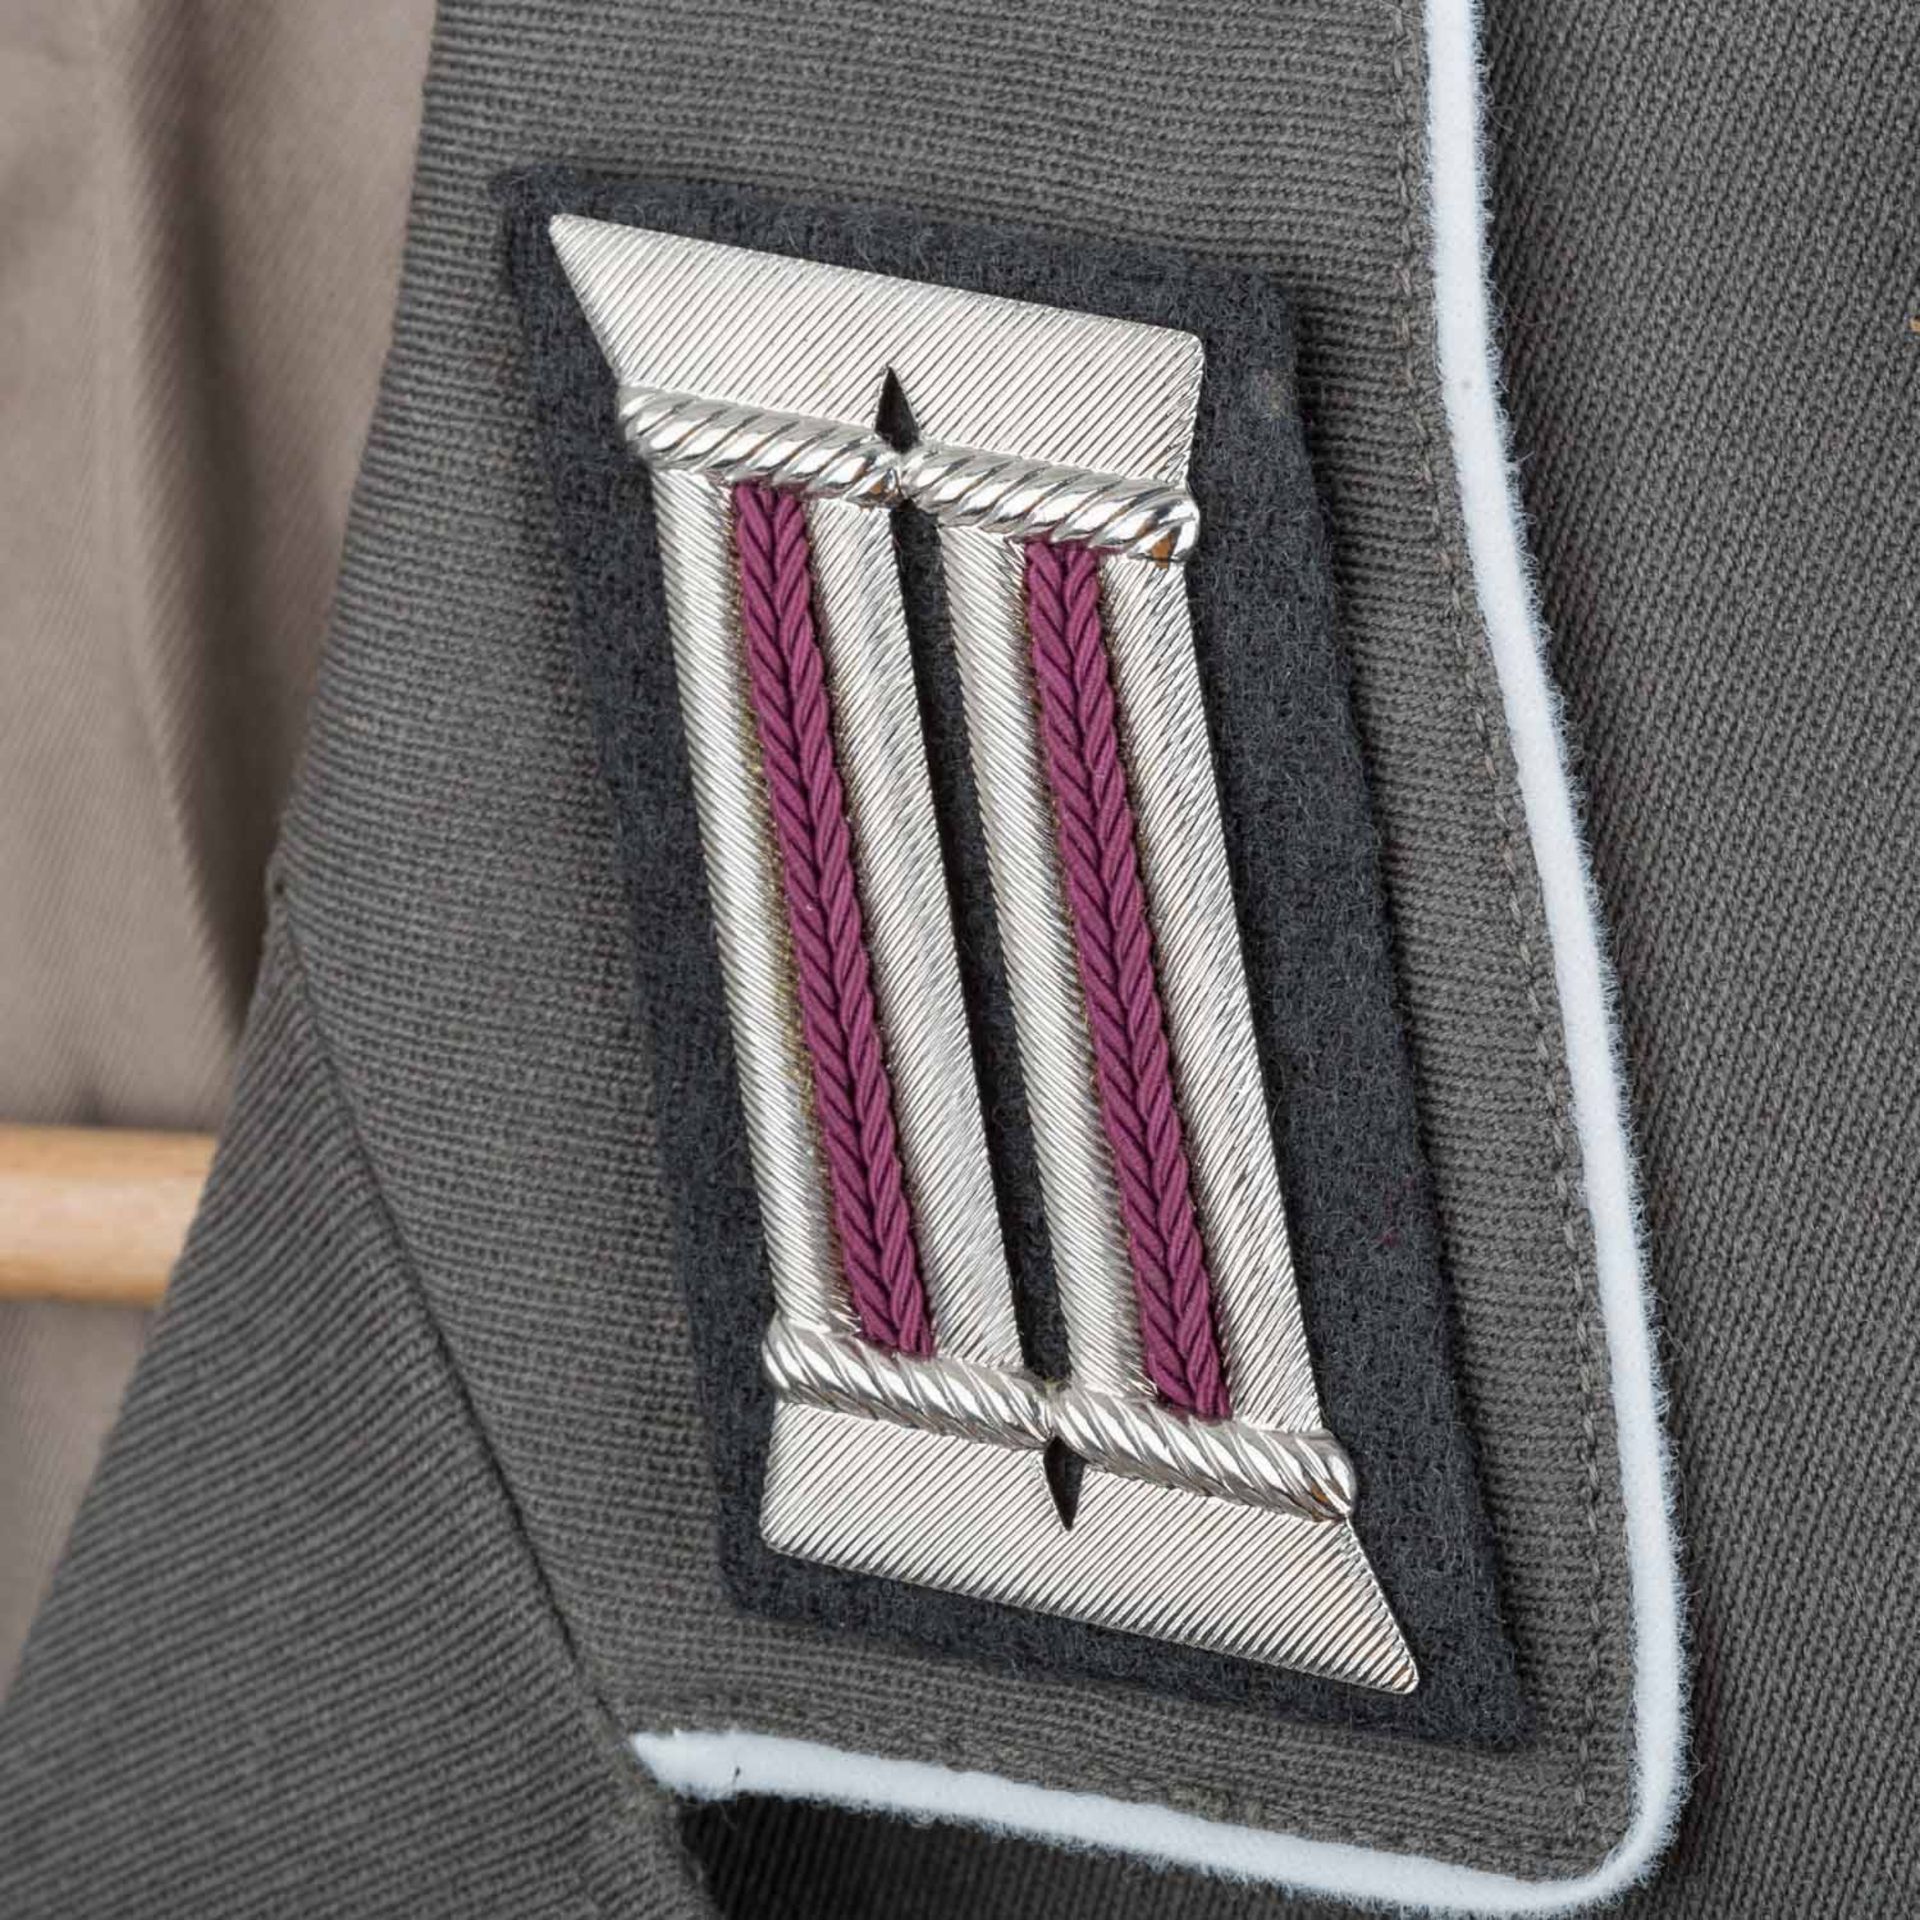 Uniformen - Dienstjacke der Nationalen Volksarmee - Image 4 of 7